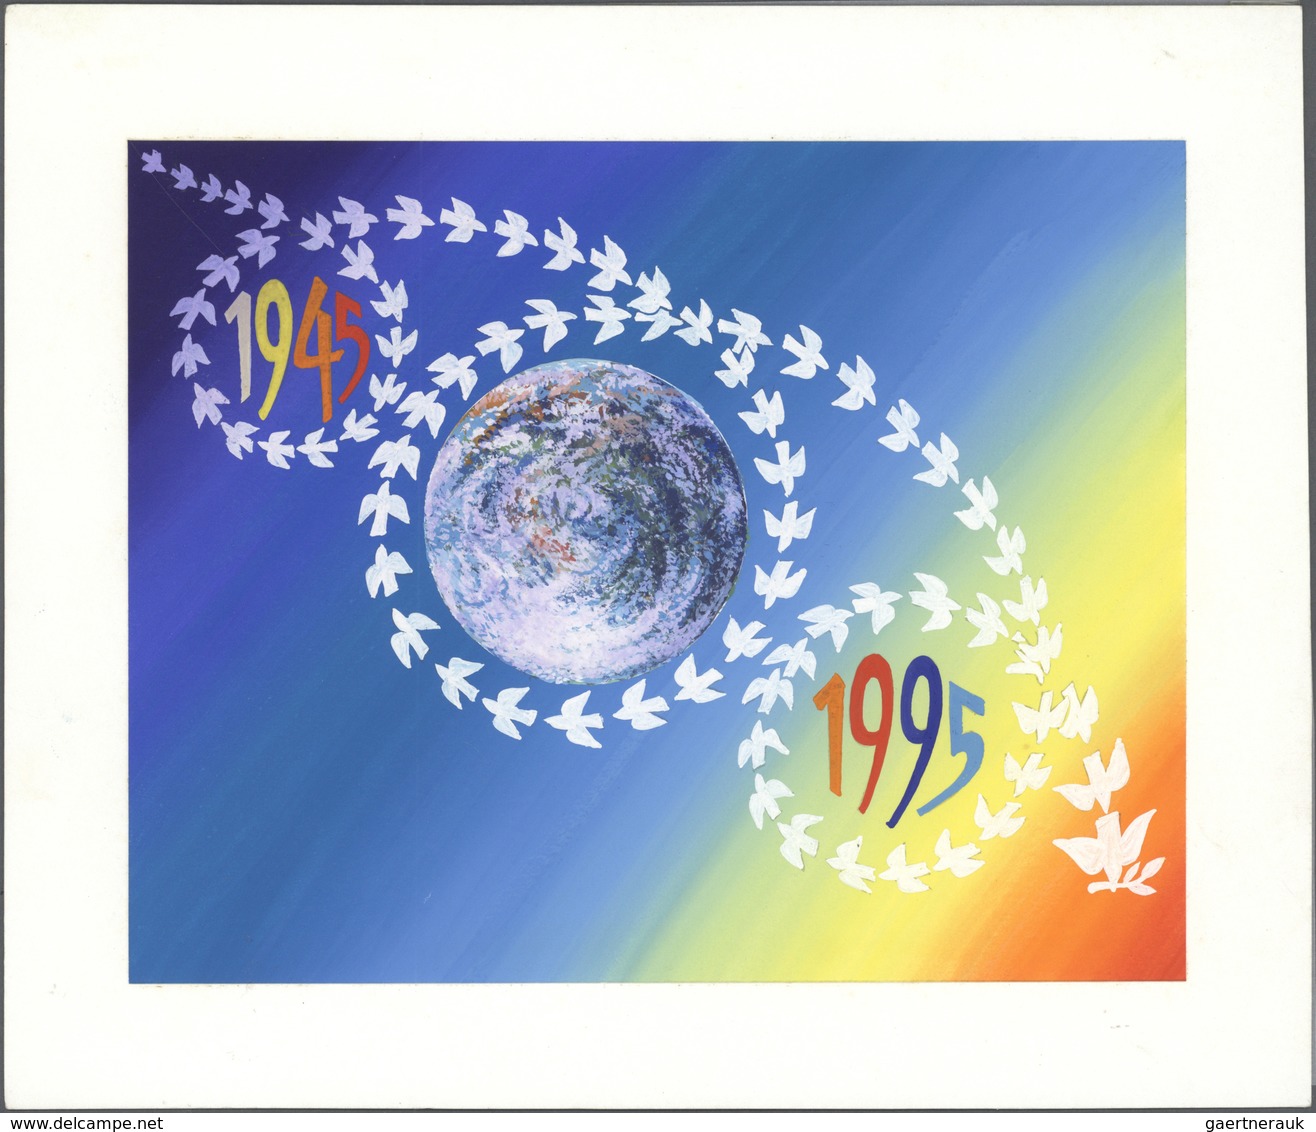 Alle Welt: 1900/1990 (ca): 31 Belege, einzeln ausgepreist und beschreiben. Eine vollständige Aufstel